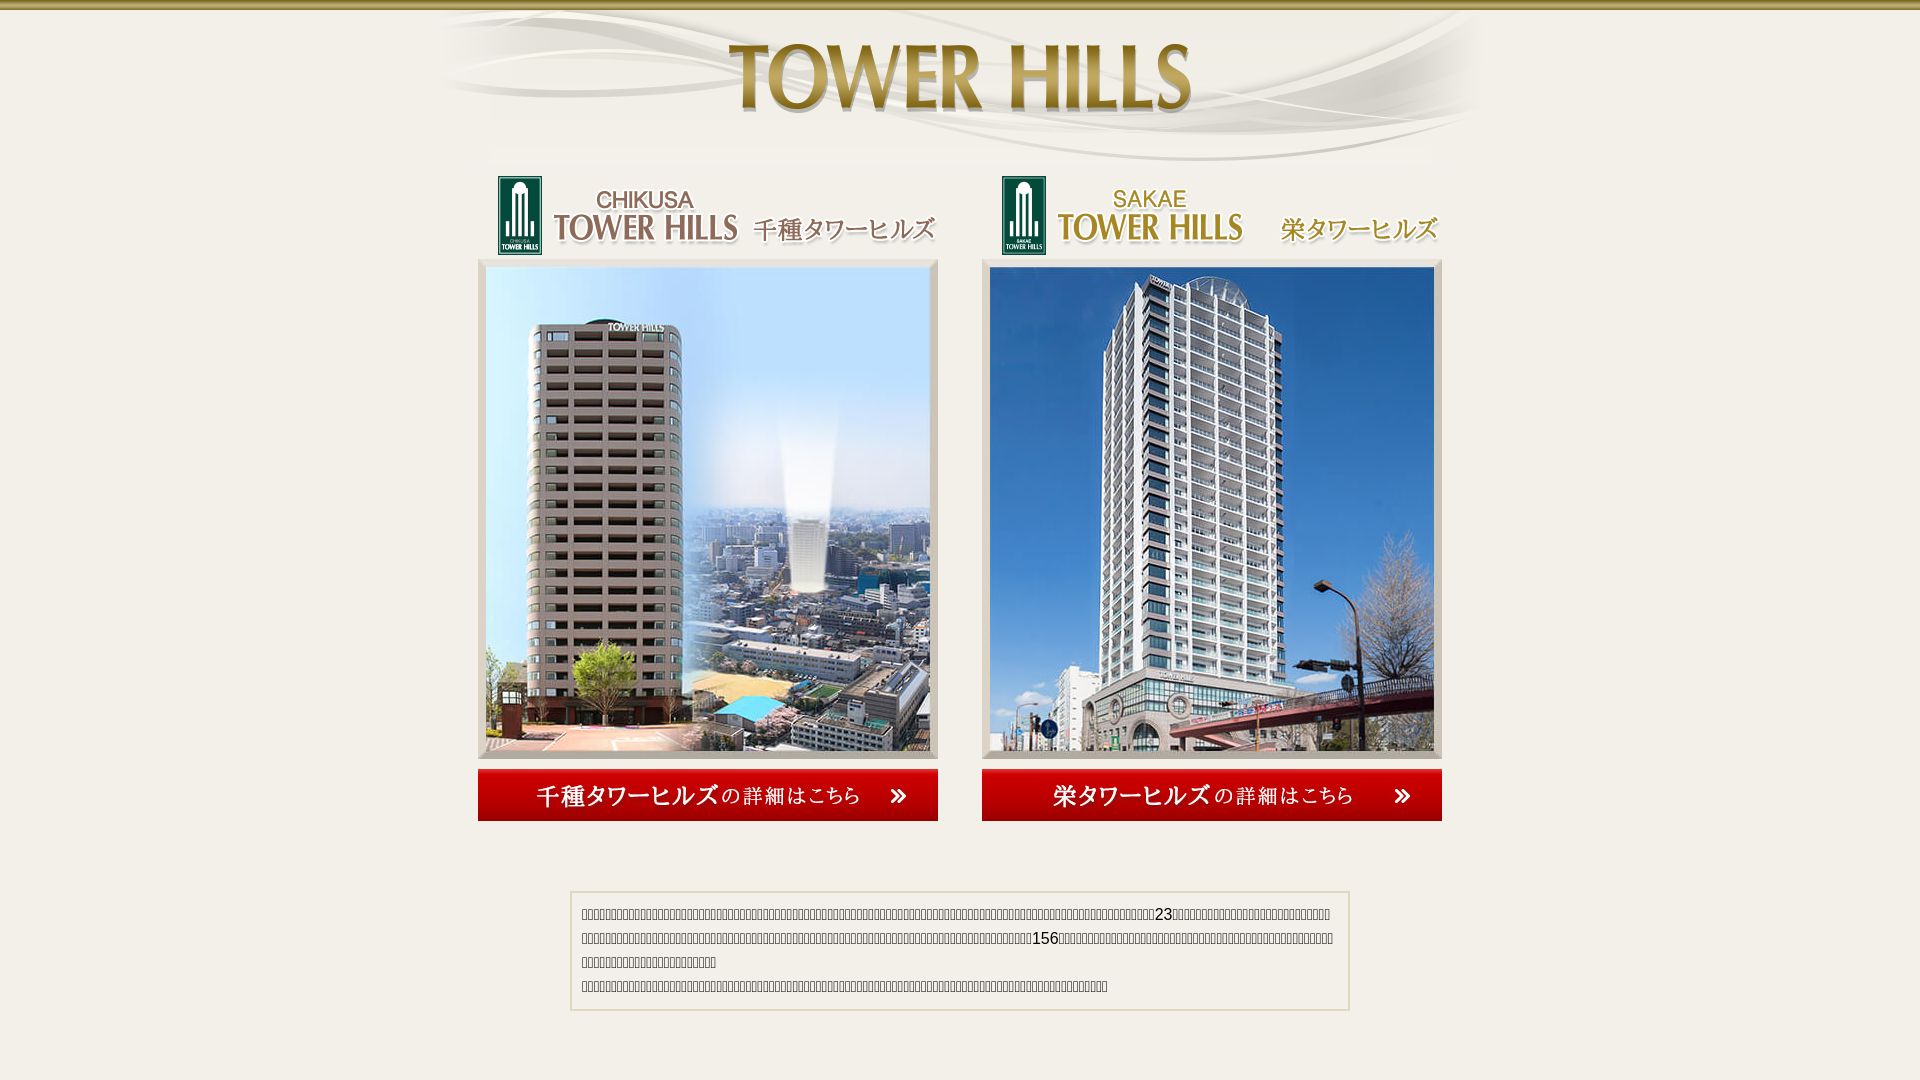 网站状态 tower-hills.com 是  在线的